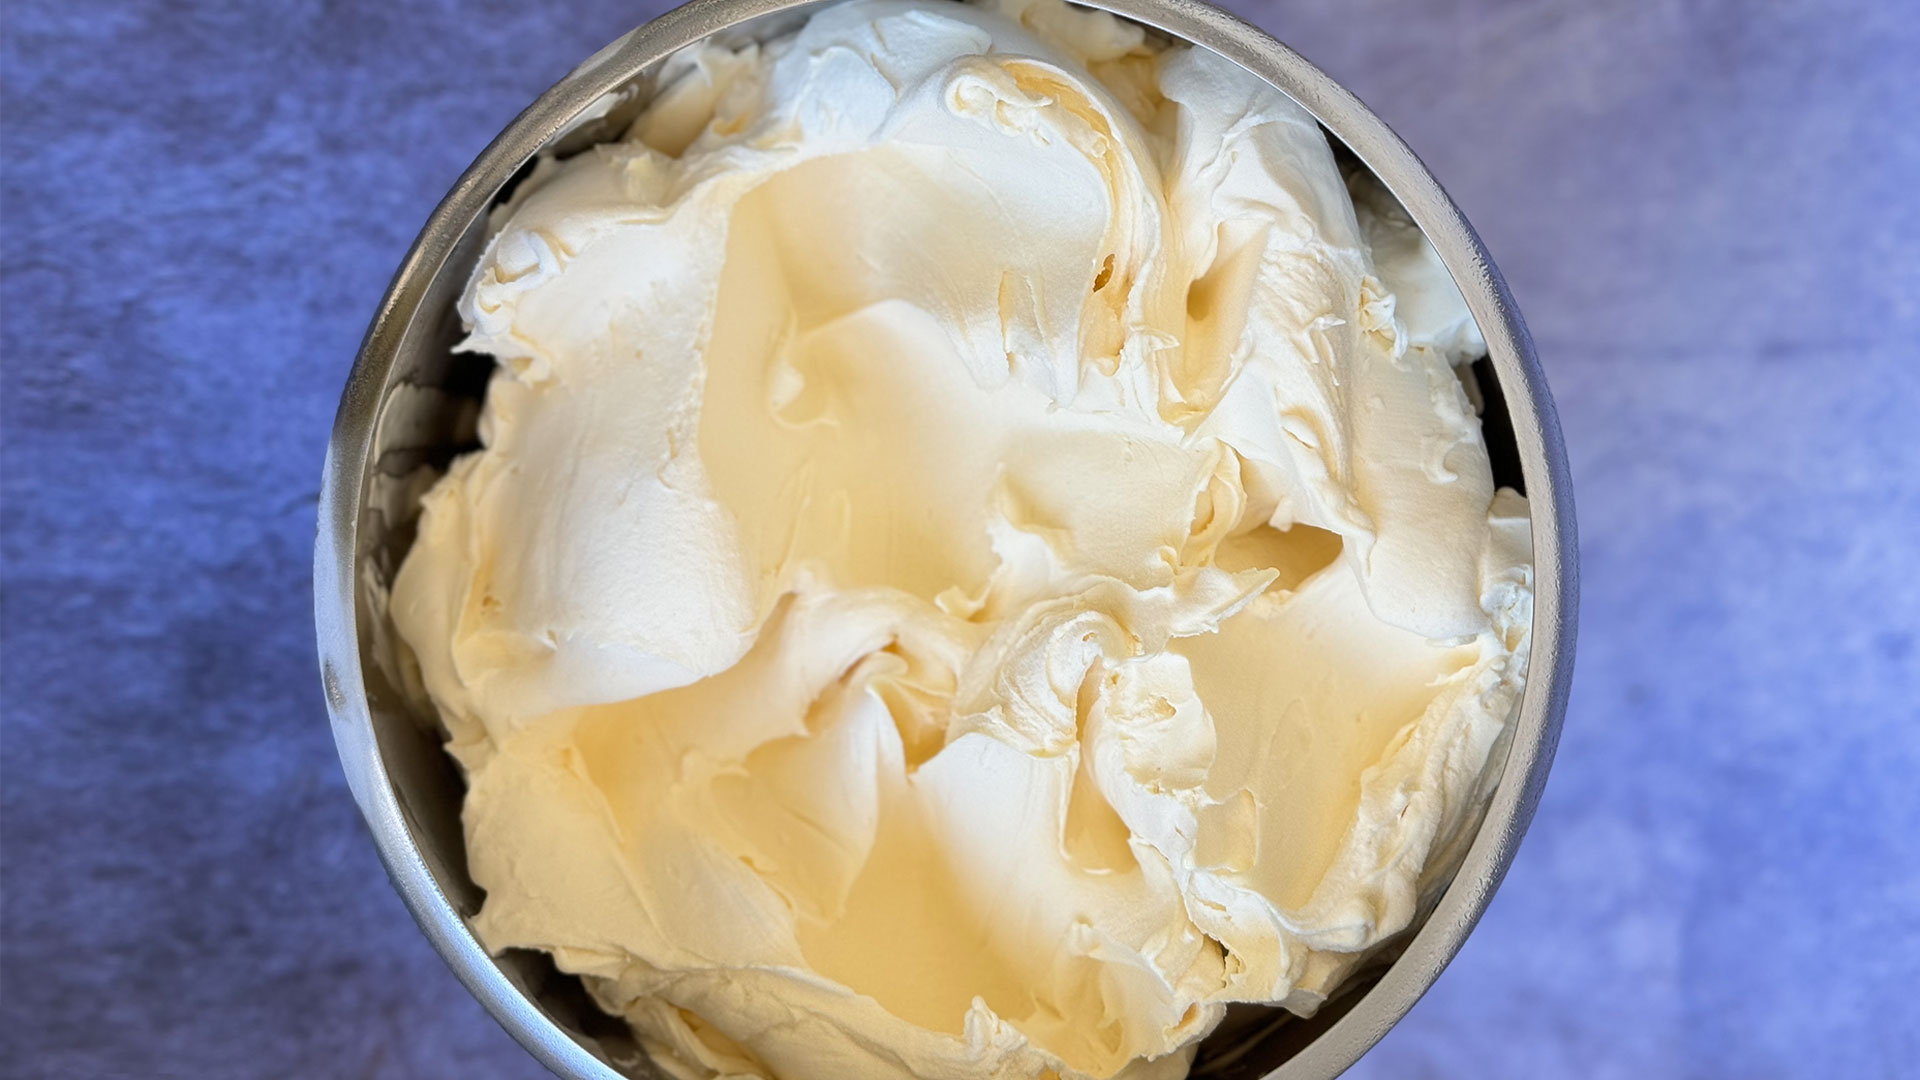 WEBINAR: Lactose-free gelato!